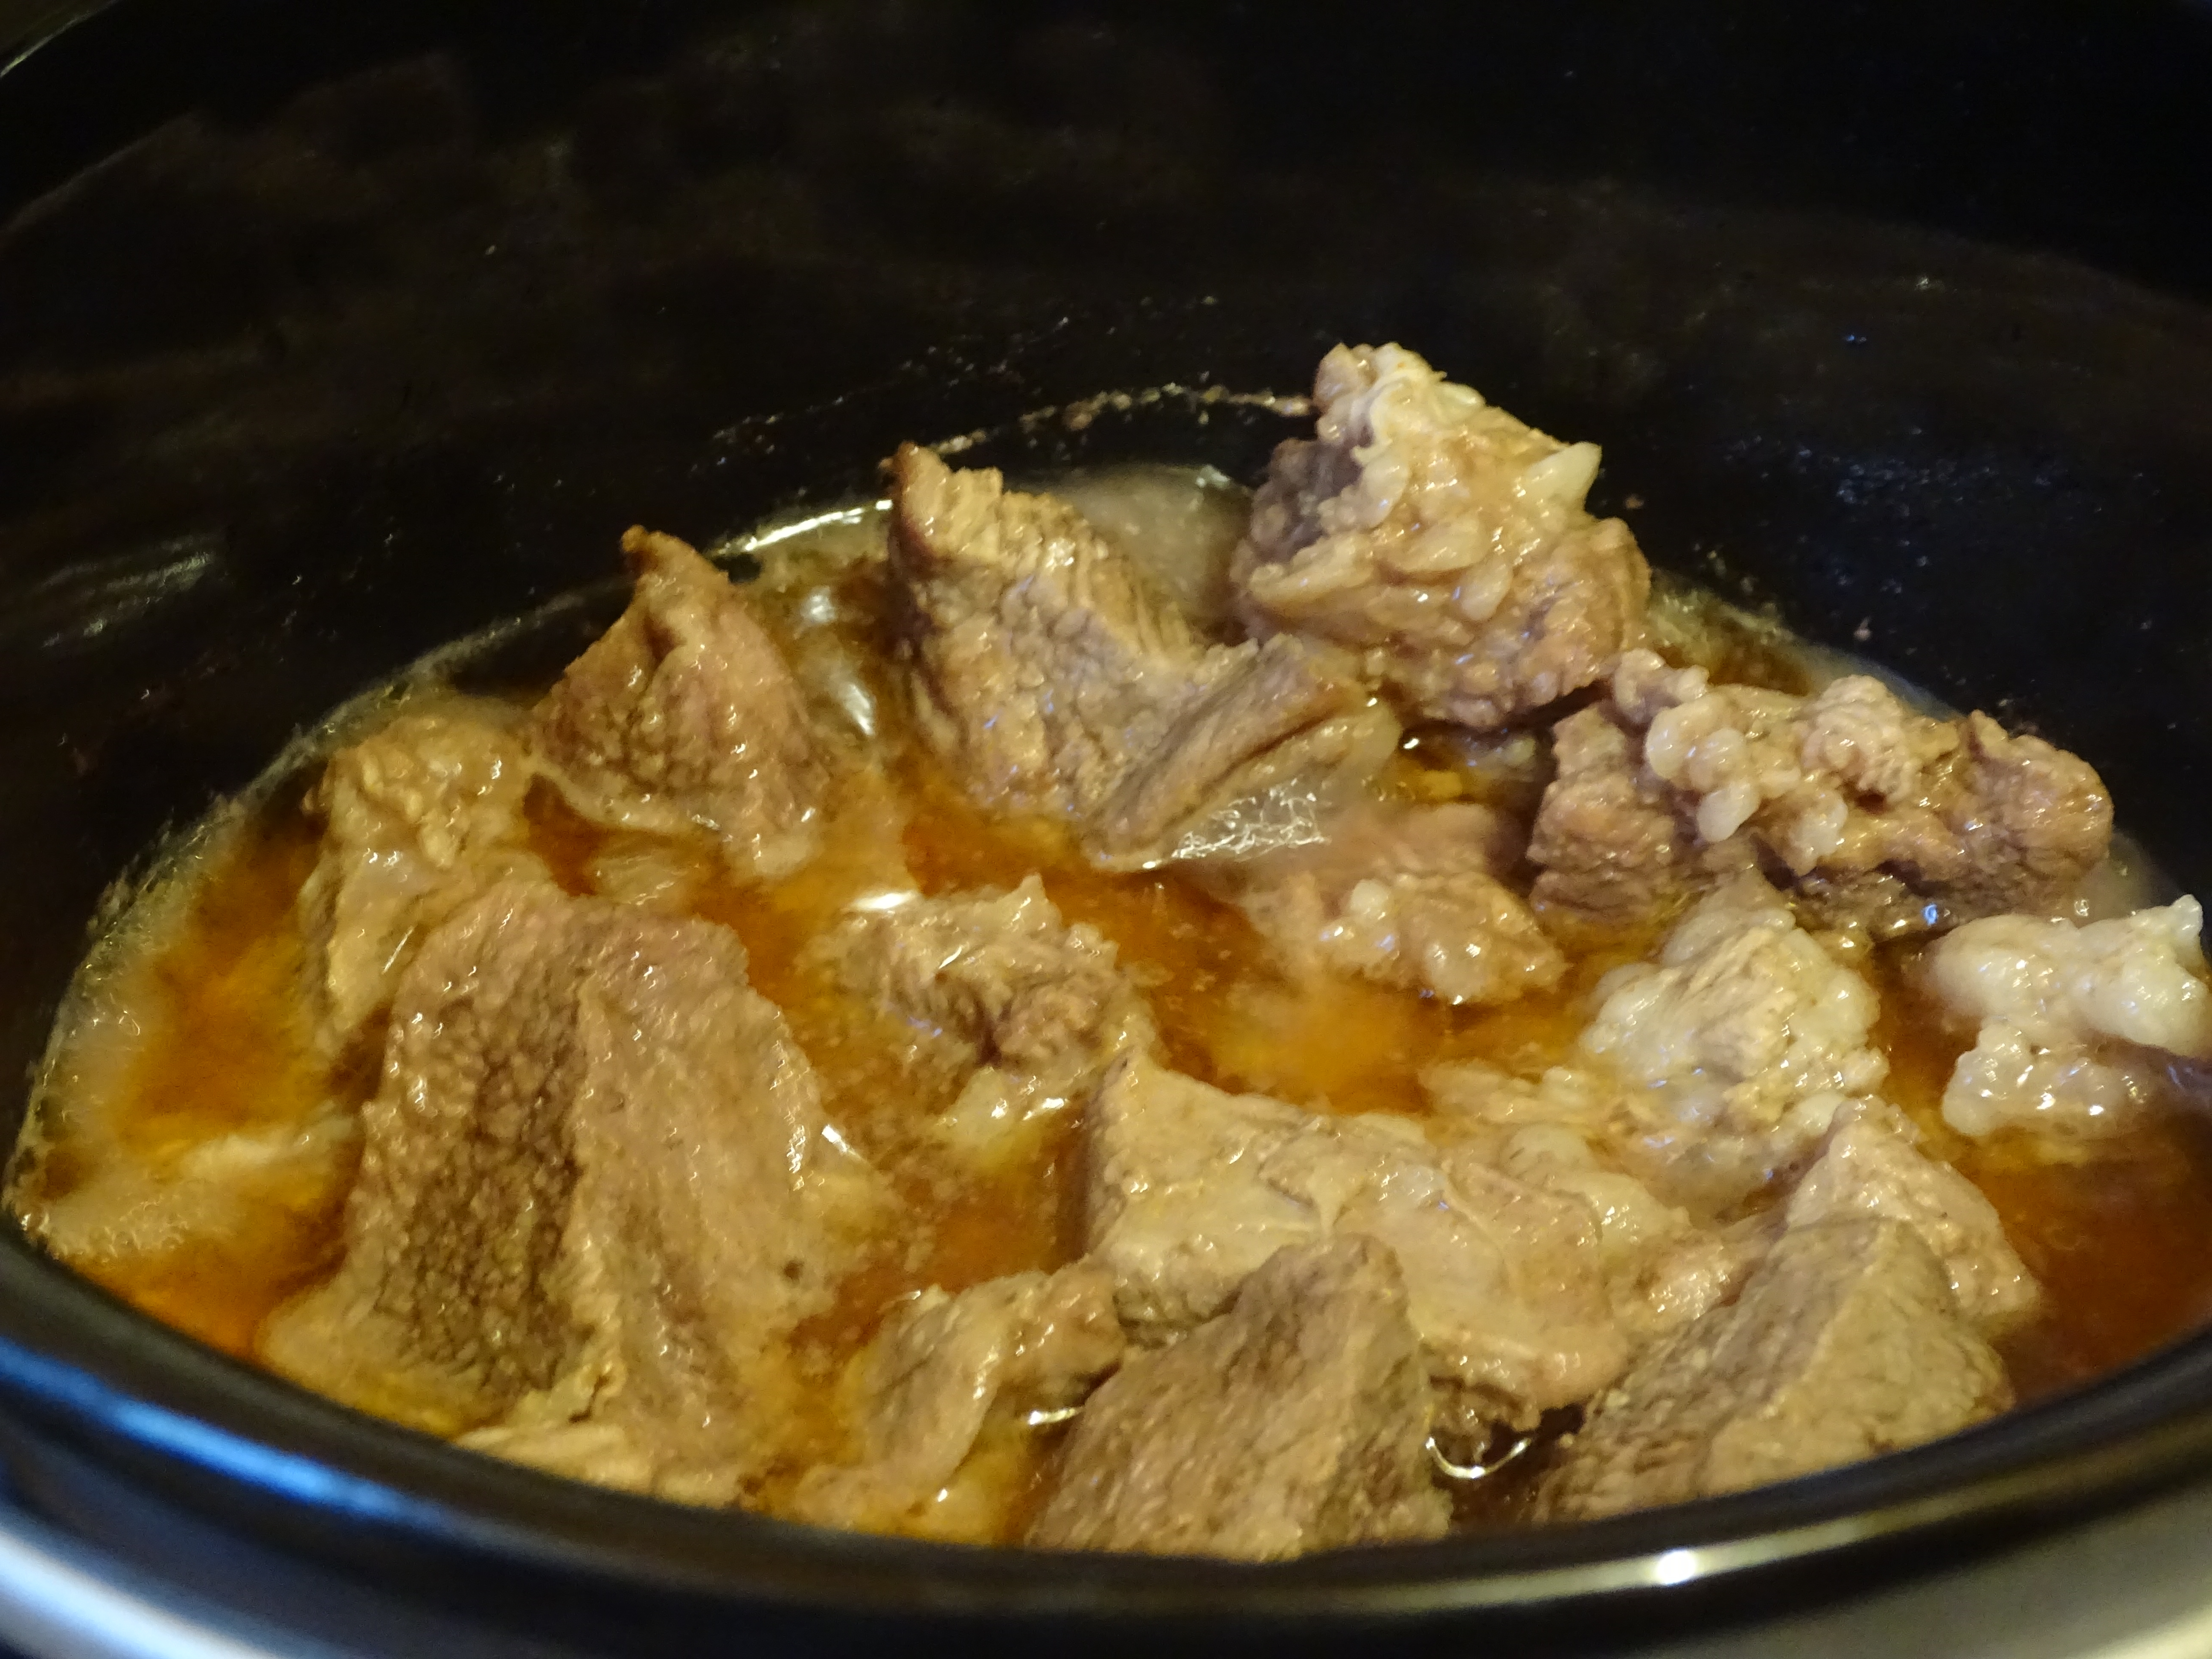 Carne de vita cu sos picant la slow cooker Crock-Pot